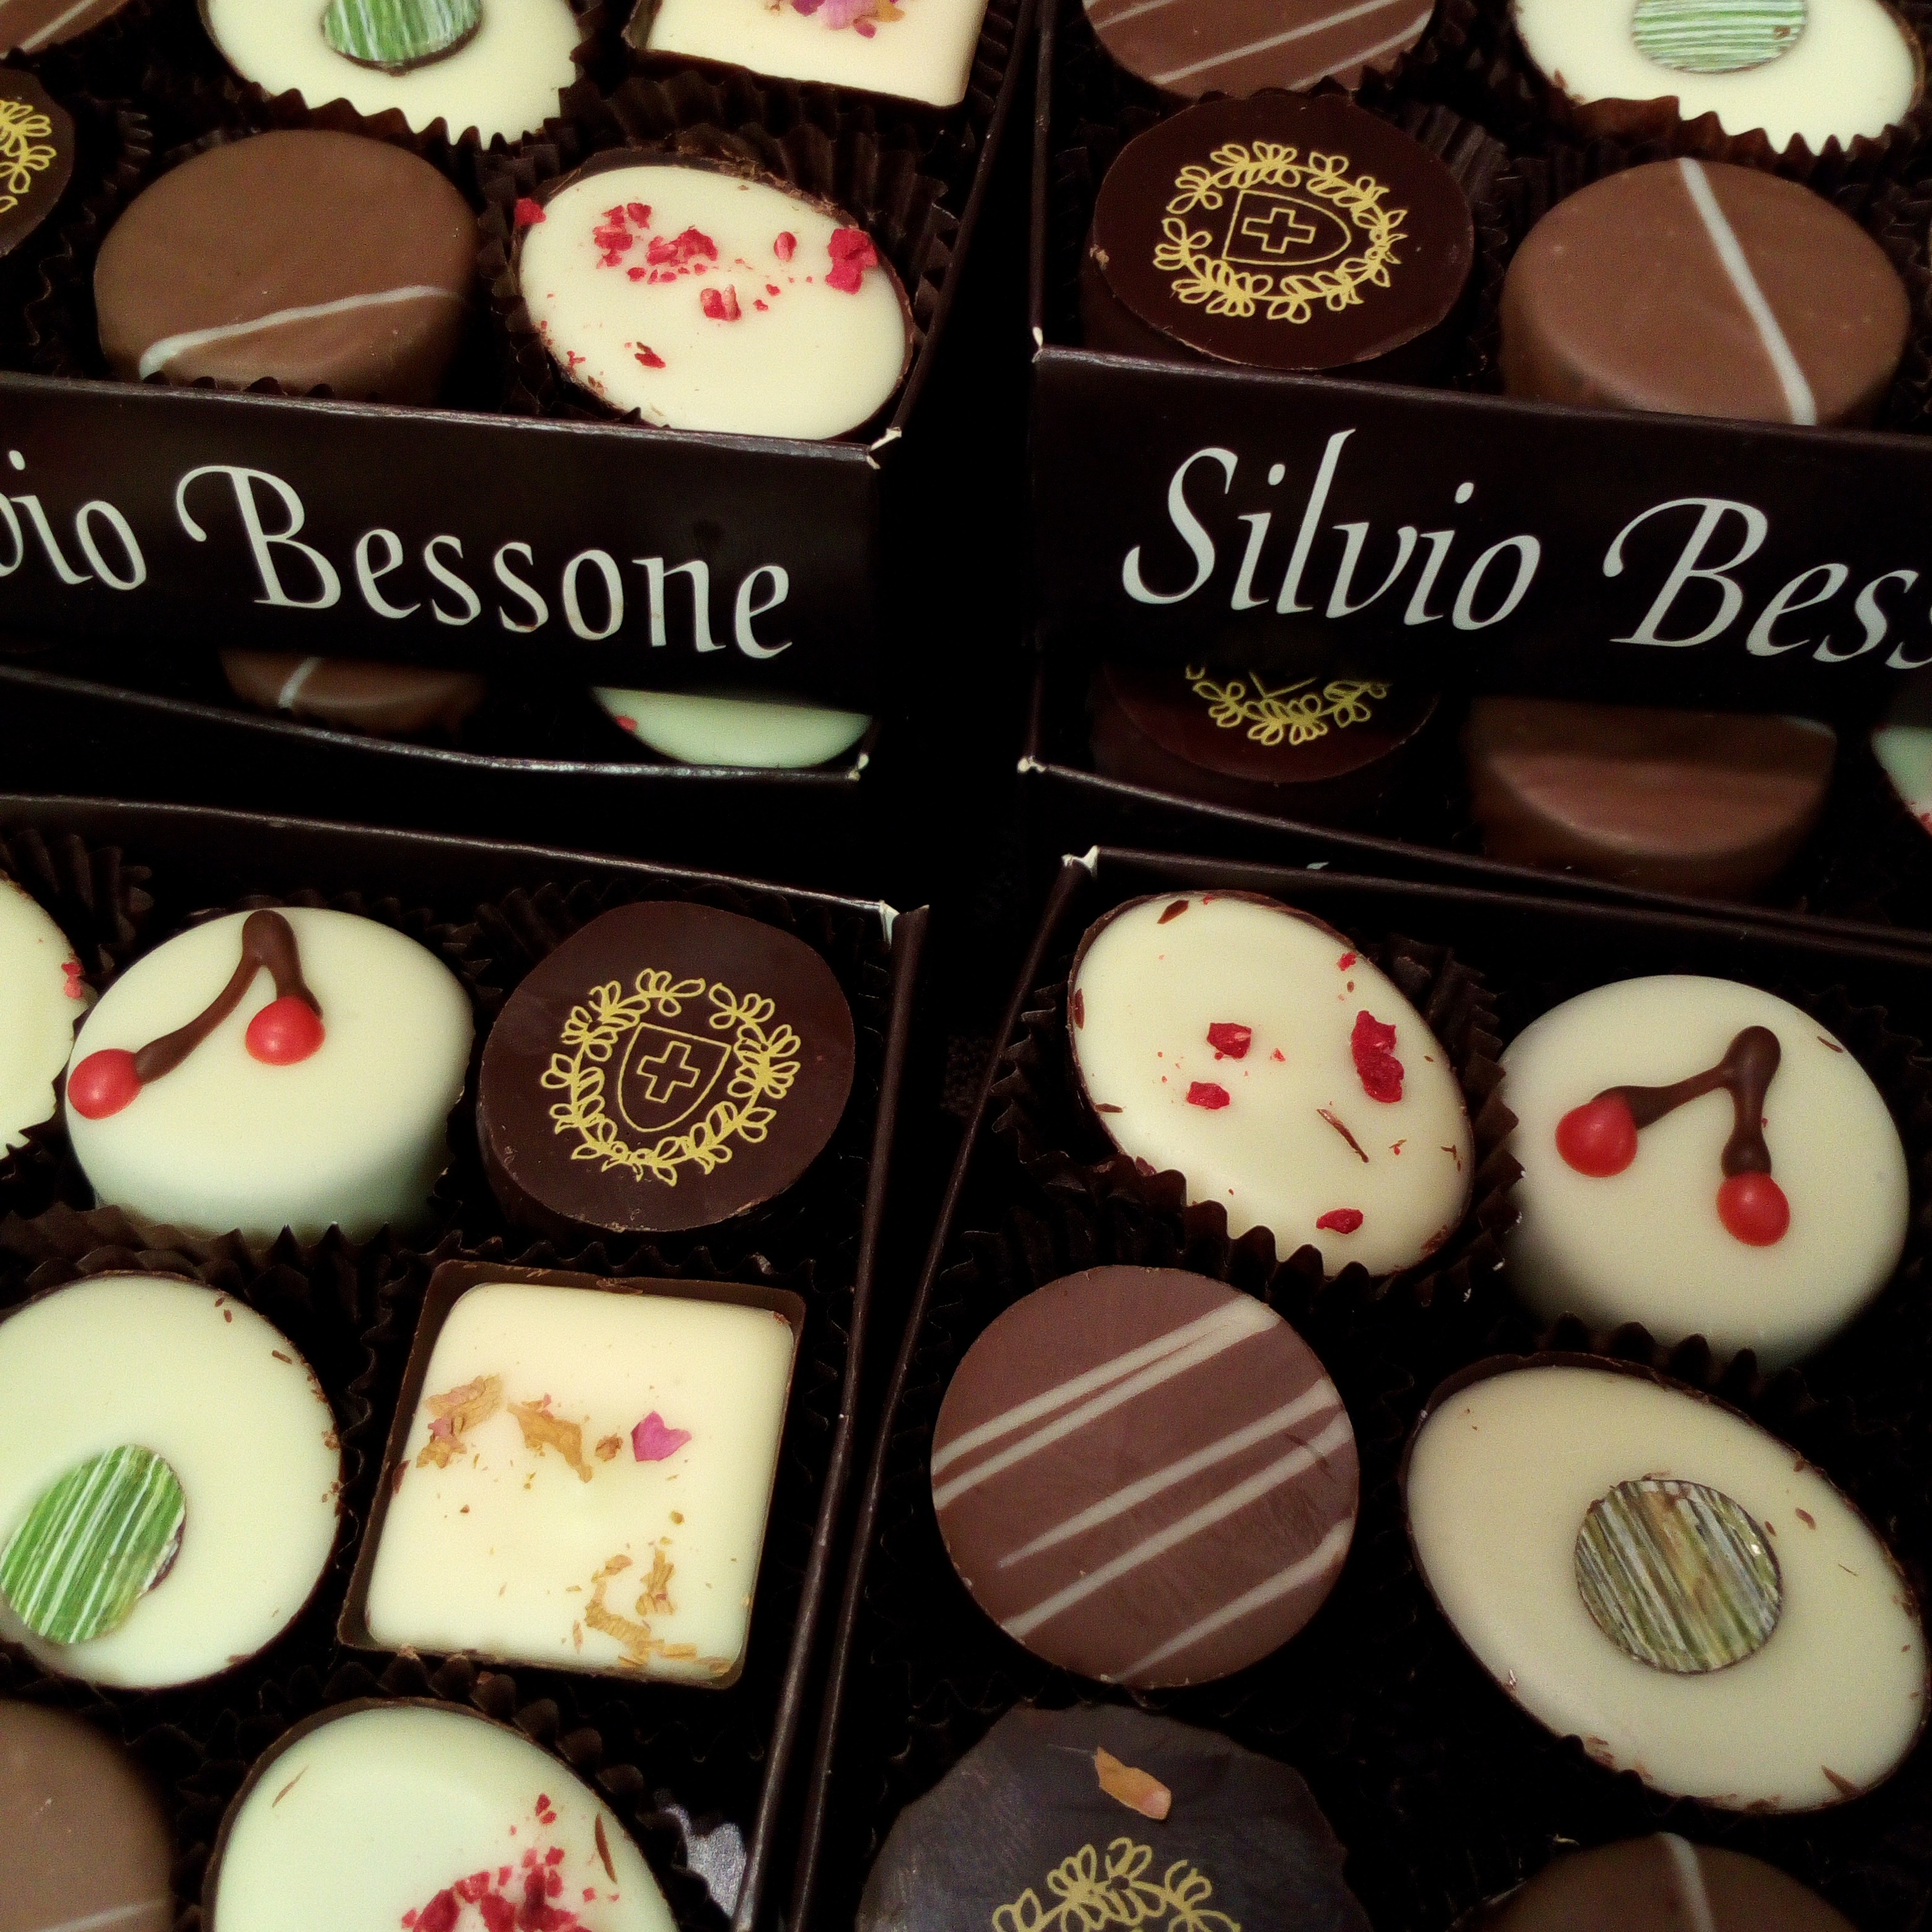 シルヴィオ・ベッソーネが2019年のショコラ・コレクションを発表。